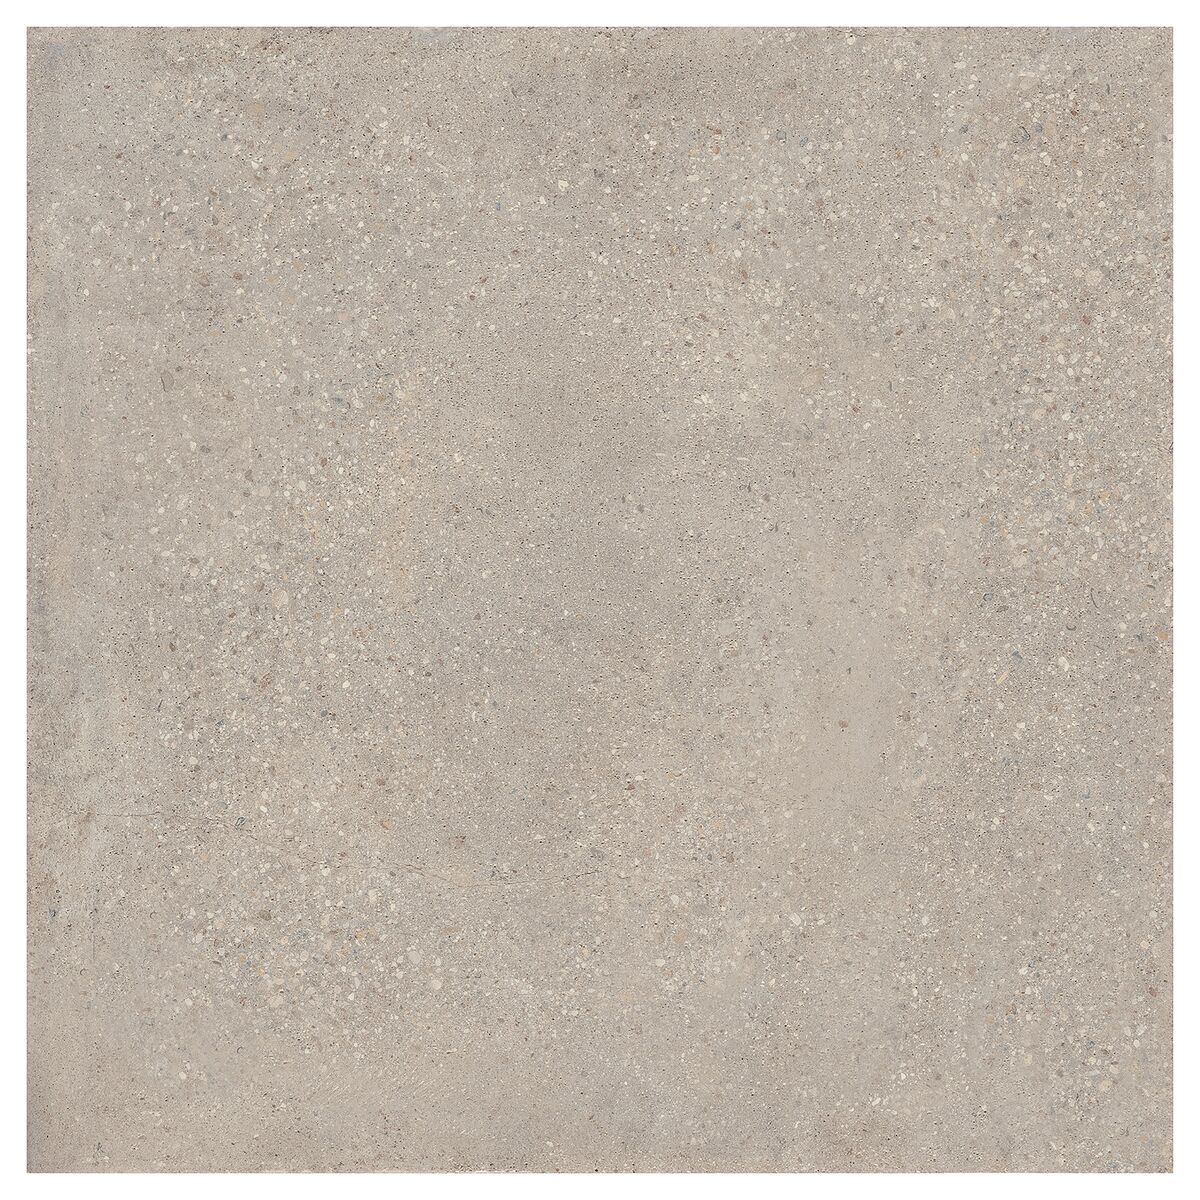 Terrastegel 100 x 100 cm Sedimento Grey 2 cm